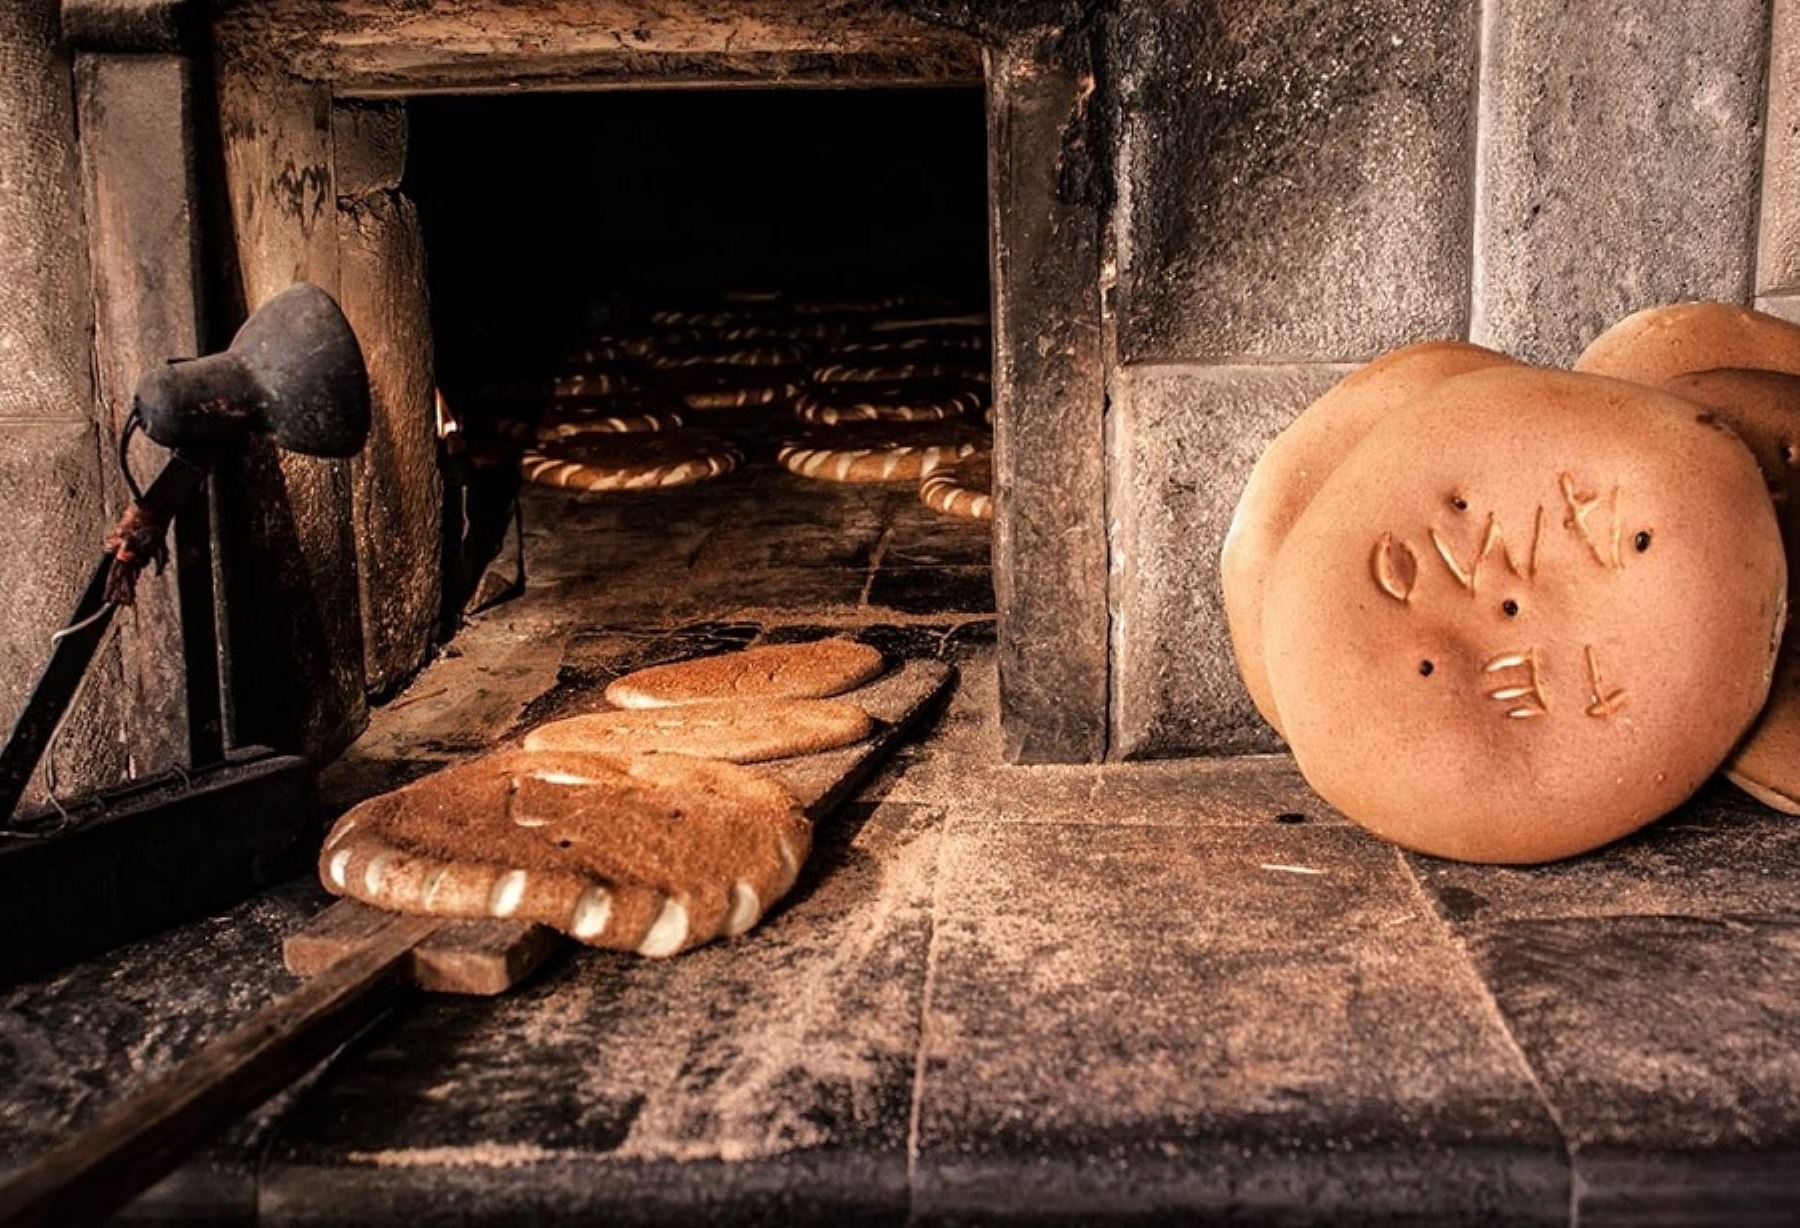 La riqueza del pan de Oropesa no solo radica en los productos que se elaboran y la forma artesanal sino también del agua natural del Apu Pachatusan ("el señor que sostiene la tierra" en quechua) y que ha logrado reconocimientos en la feria gastronómica Mistura